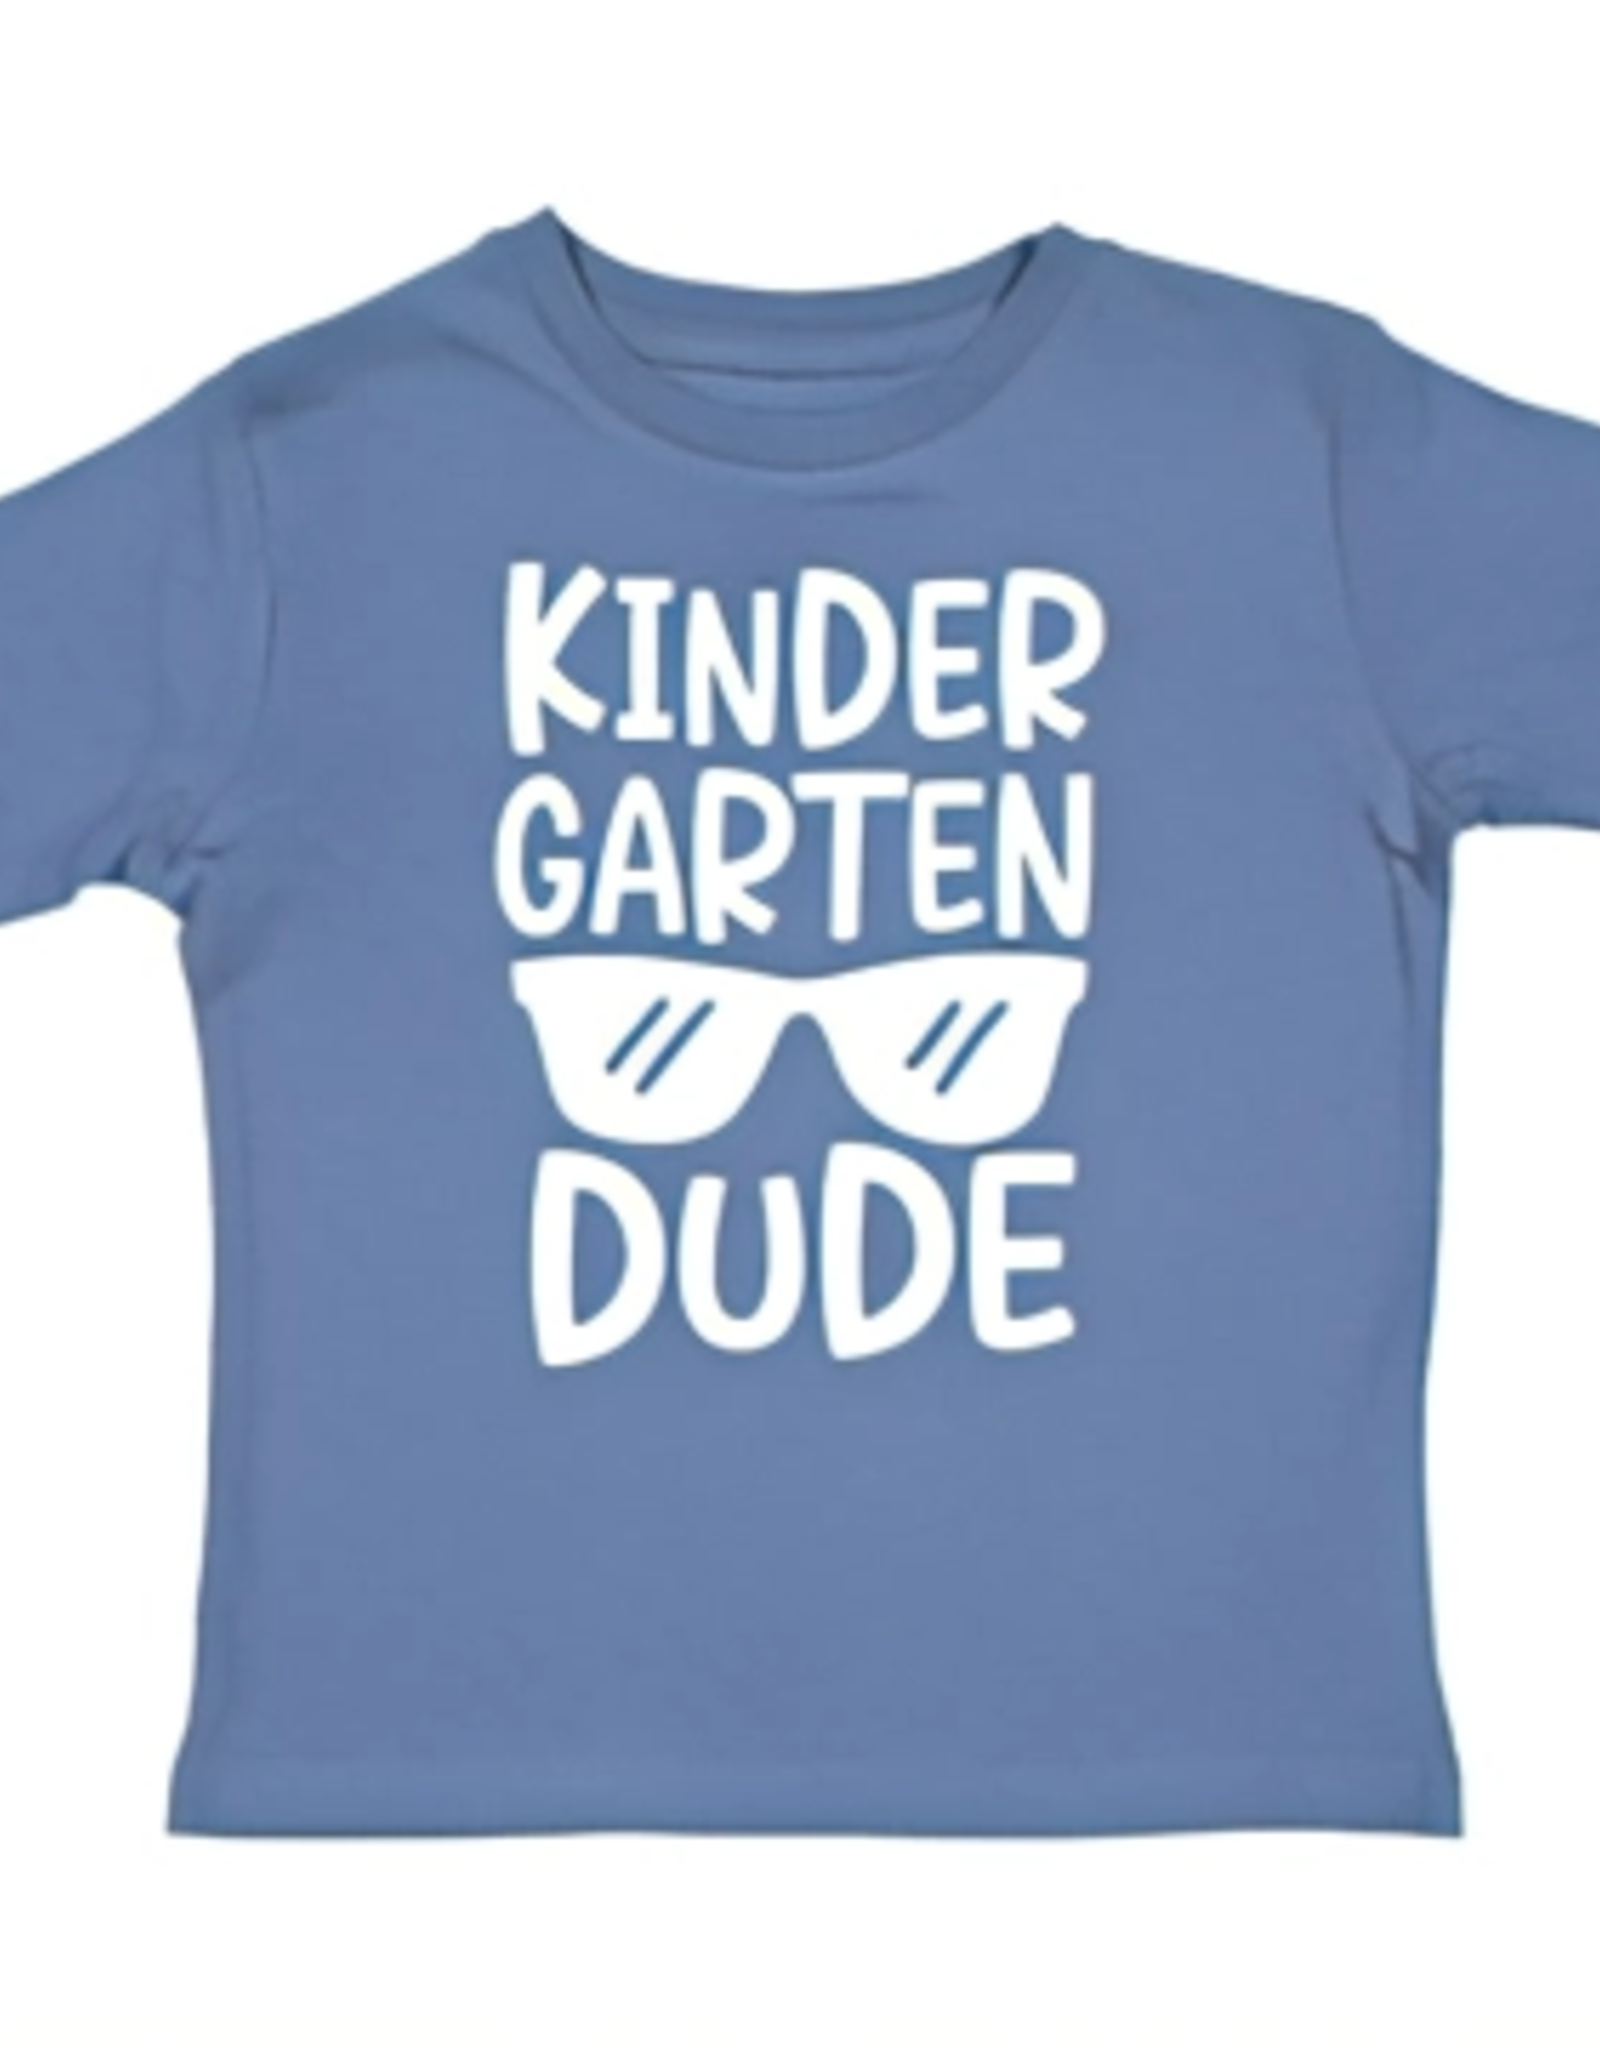 Kindergarten Dude T Shirt